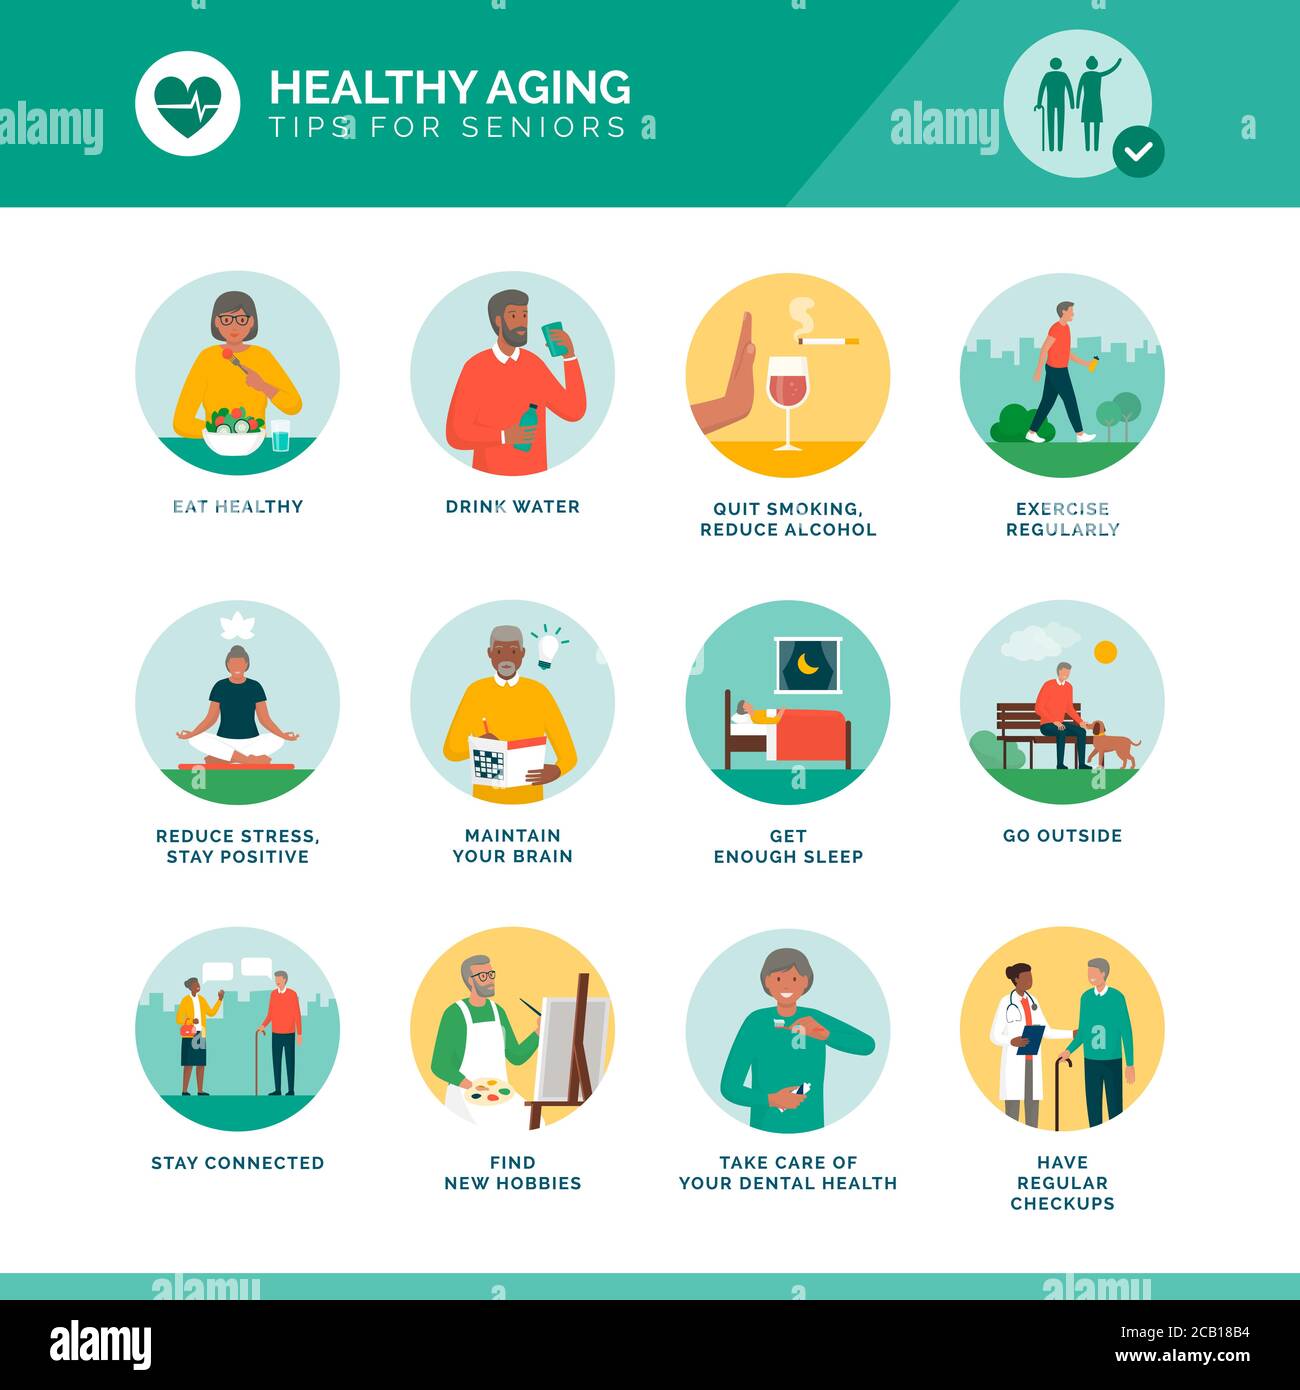 Insieme di icone sane di invecchiamento e benessere senior: Stile di vita sano, mantenimento del cervello e fitness per gli anziani Illustrazione Vettoriale